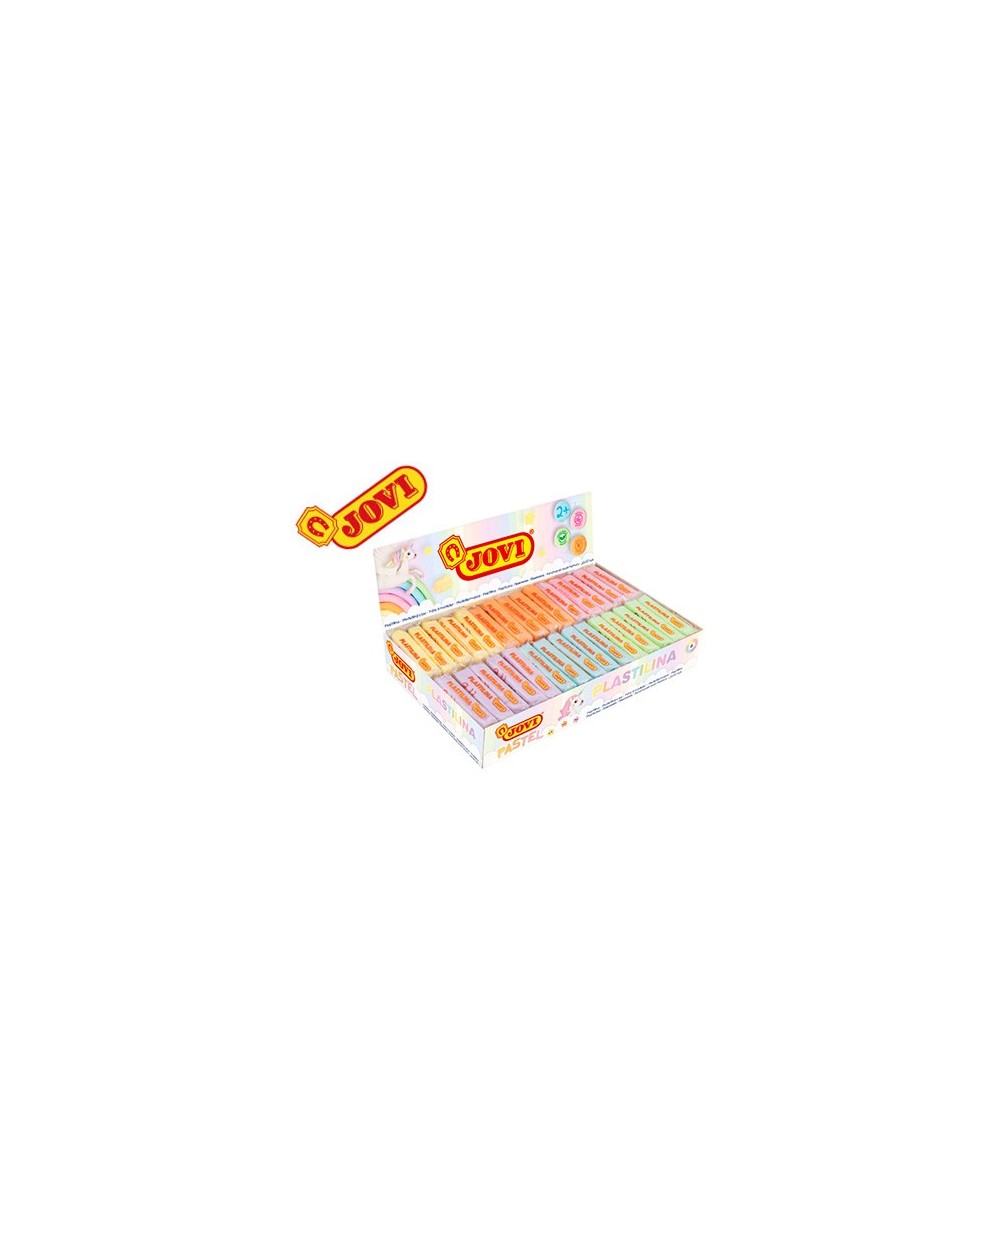 Plastilina jovi 70 surtida tamano pequeno 50 g colores pastel caja de 30 unidades